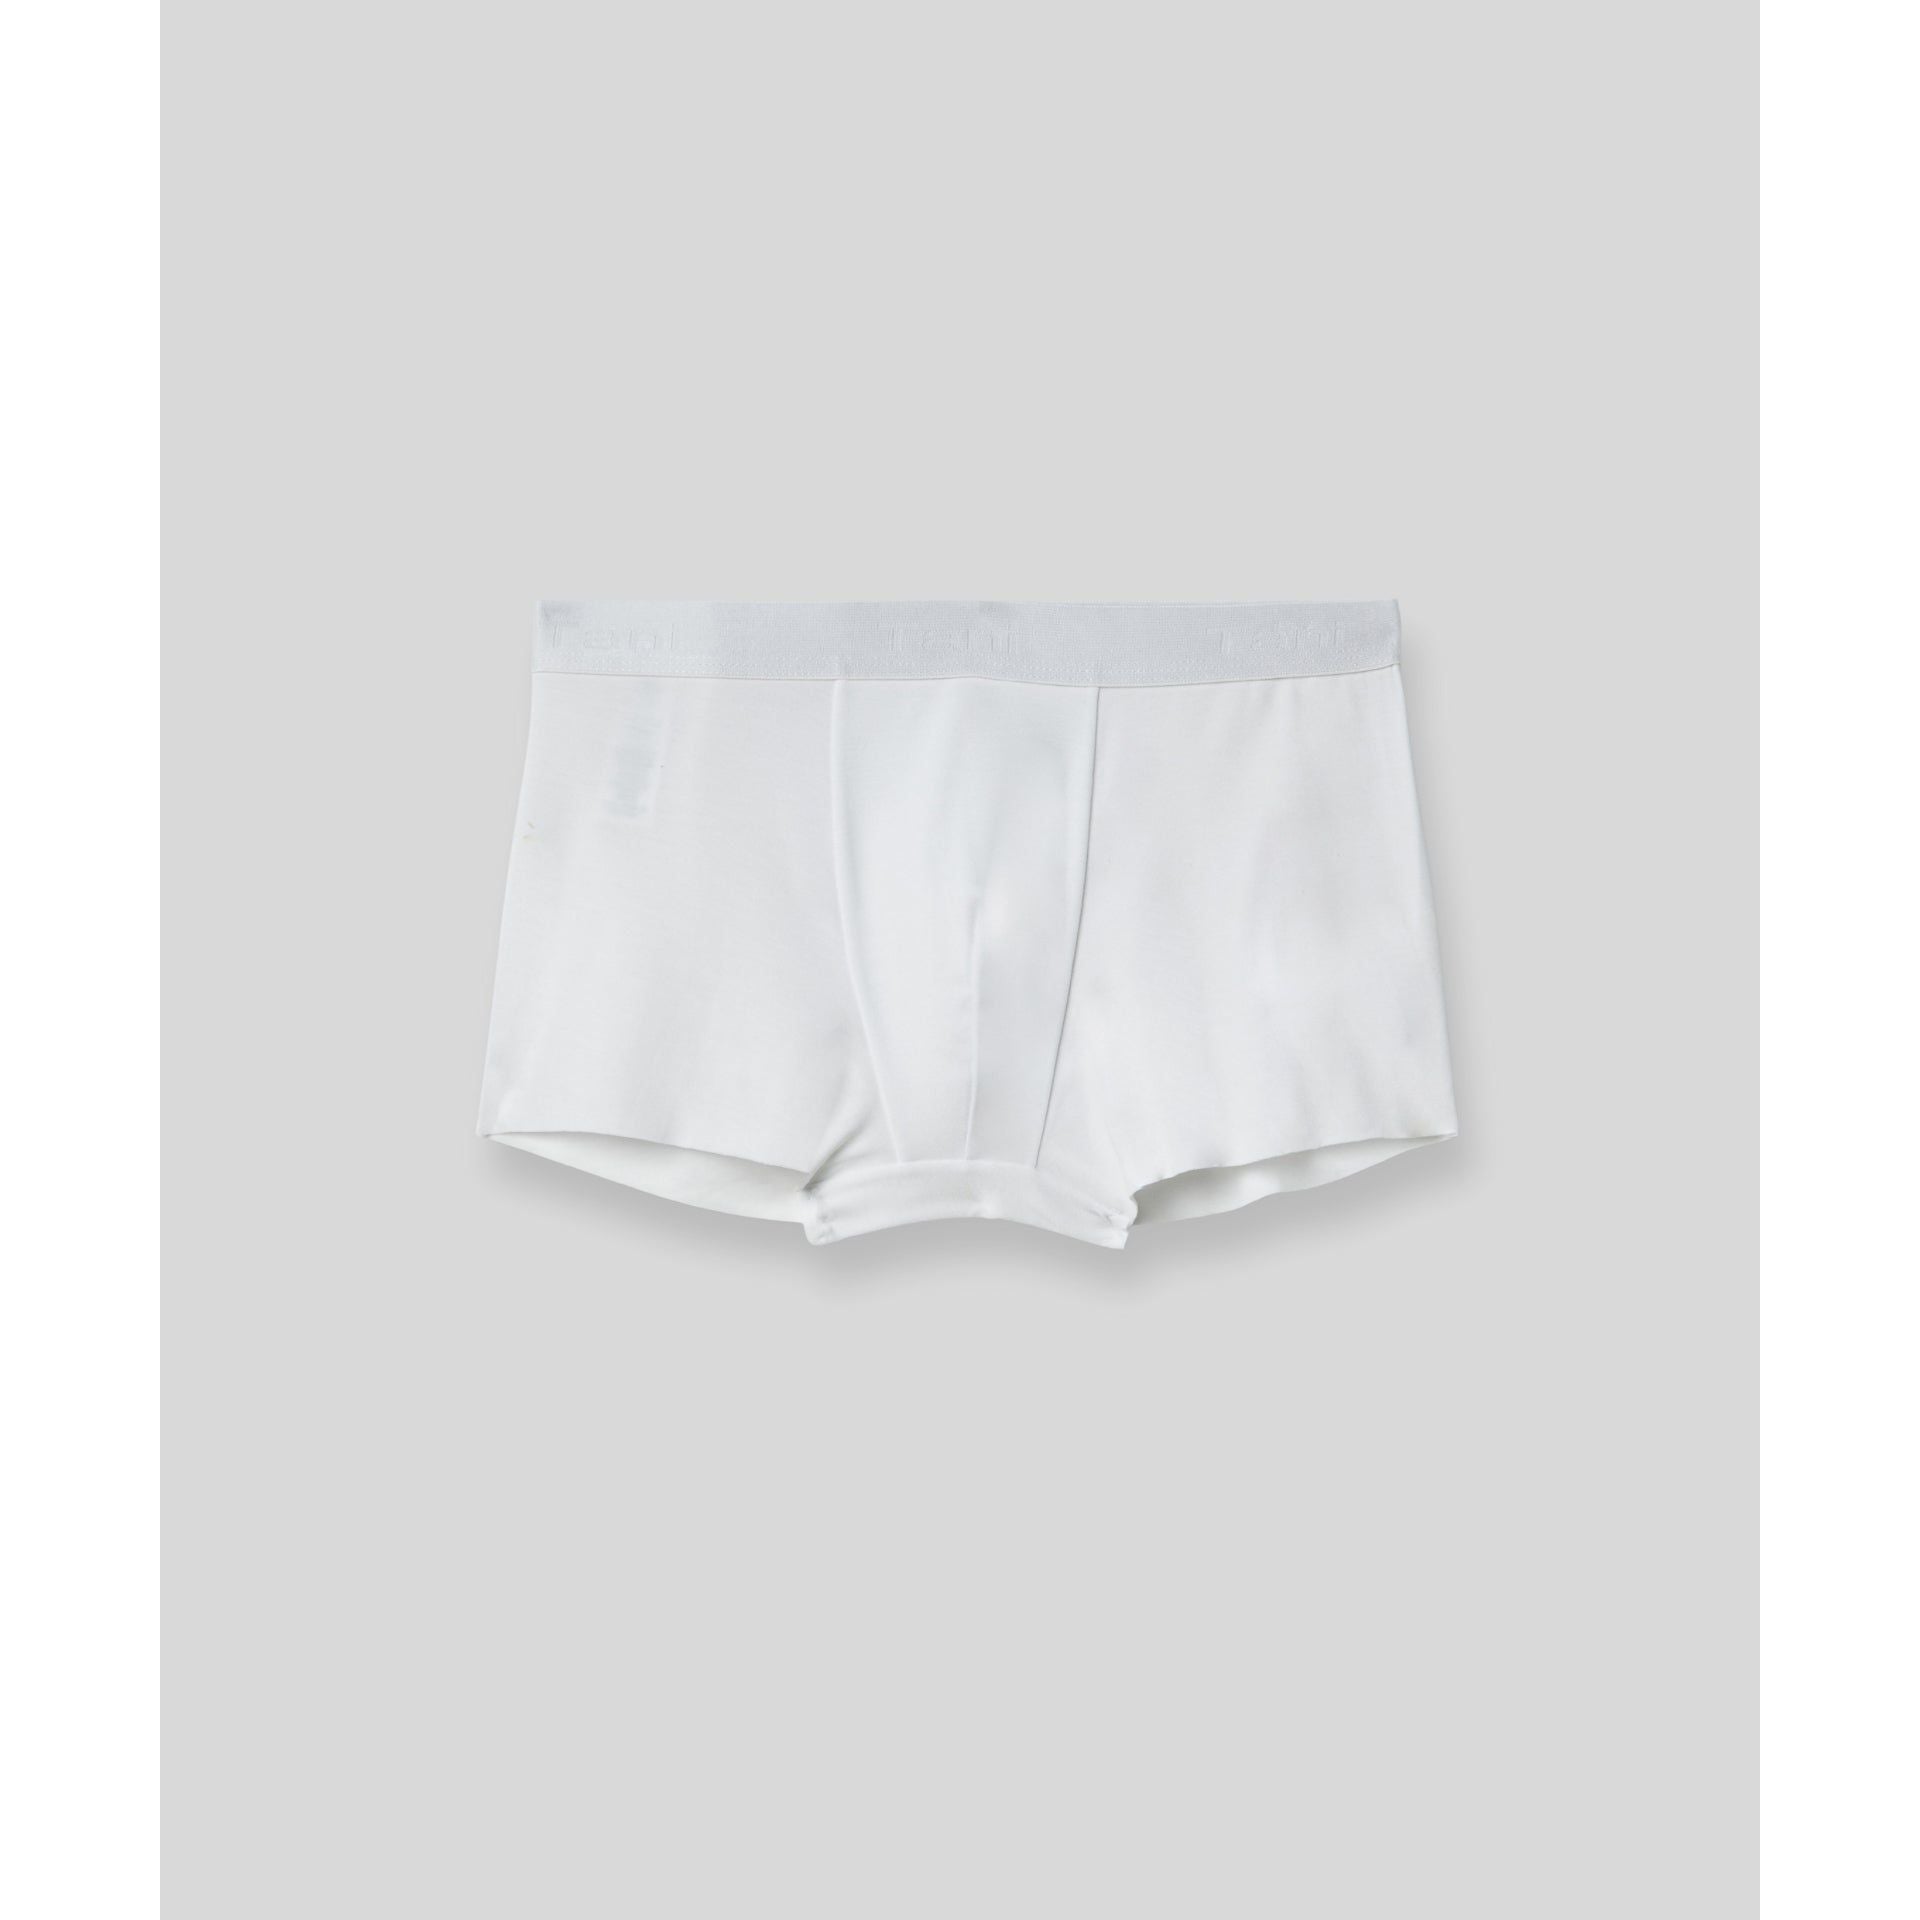 SilkCut Mens Trunk Underwear